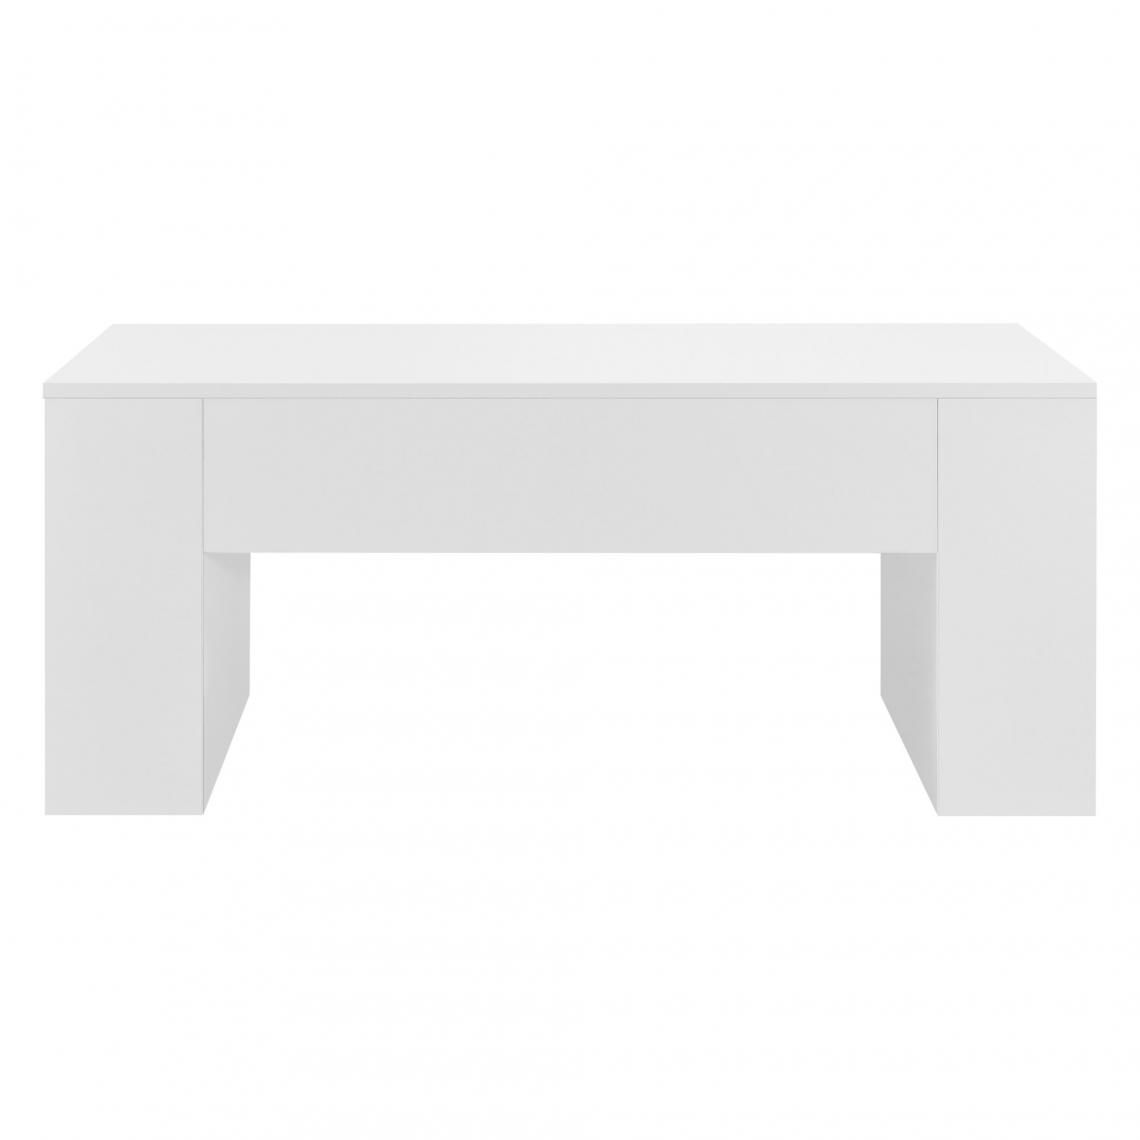 Helloshop26 - Table basse rectangulaire pour salon 100 cm blanc brillant 03_0006174 - Tables basses